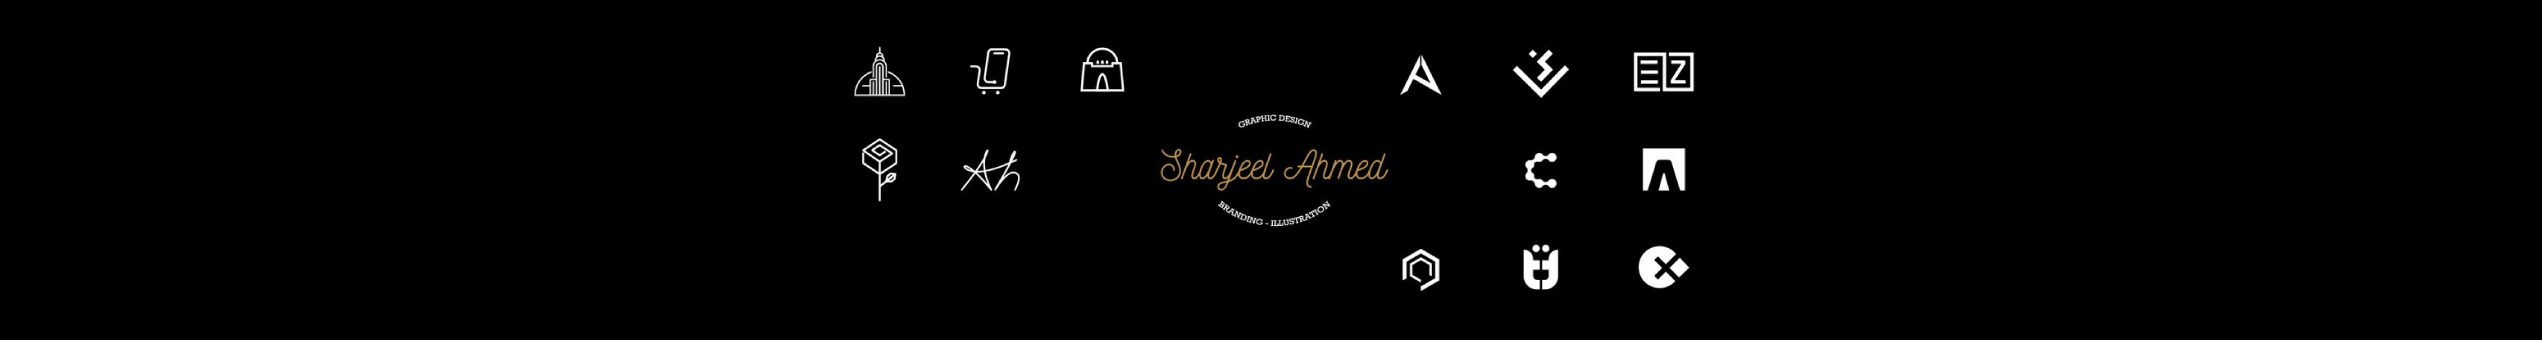 Profilbanneret til Sharjeel Ahmed